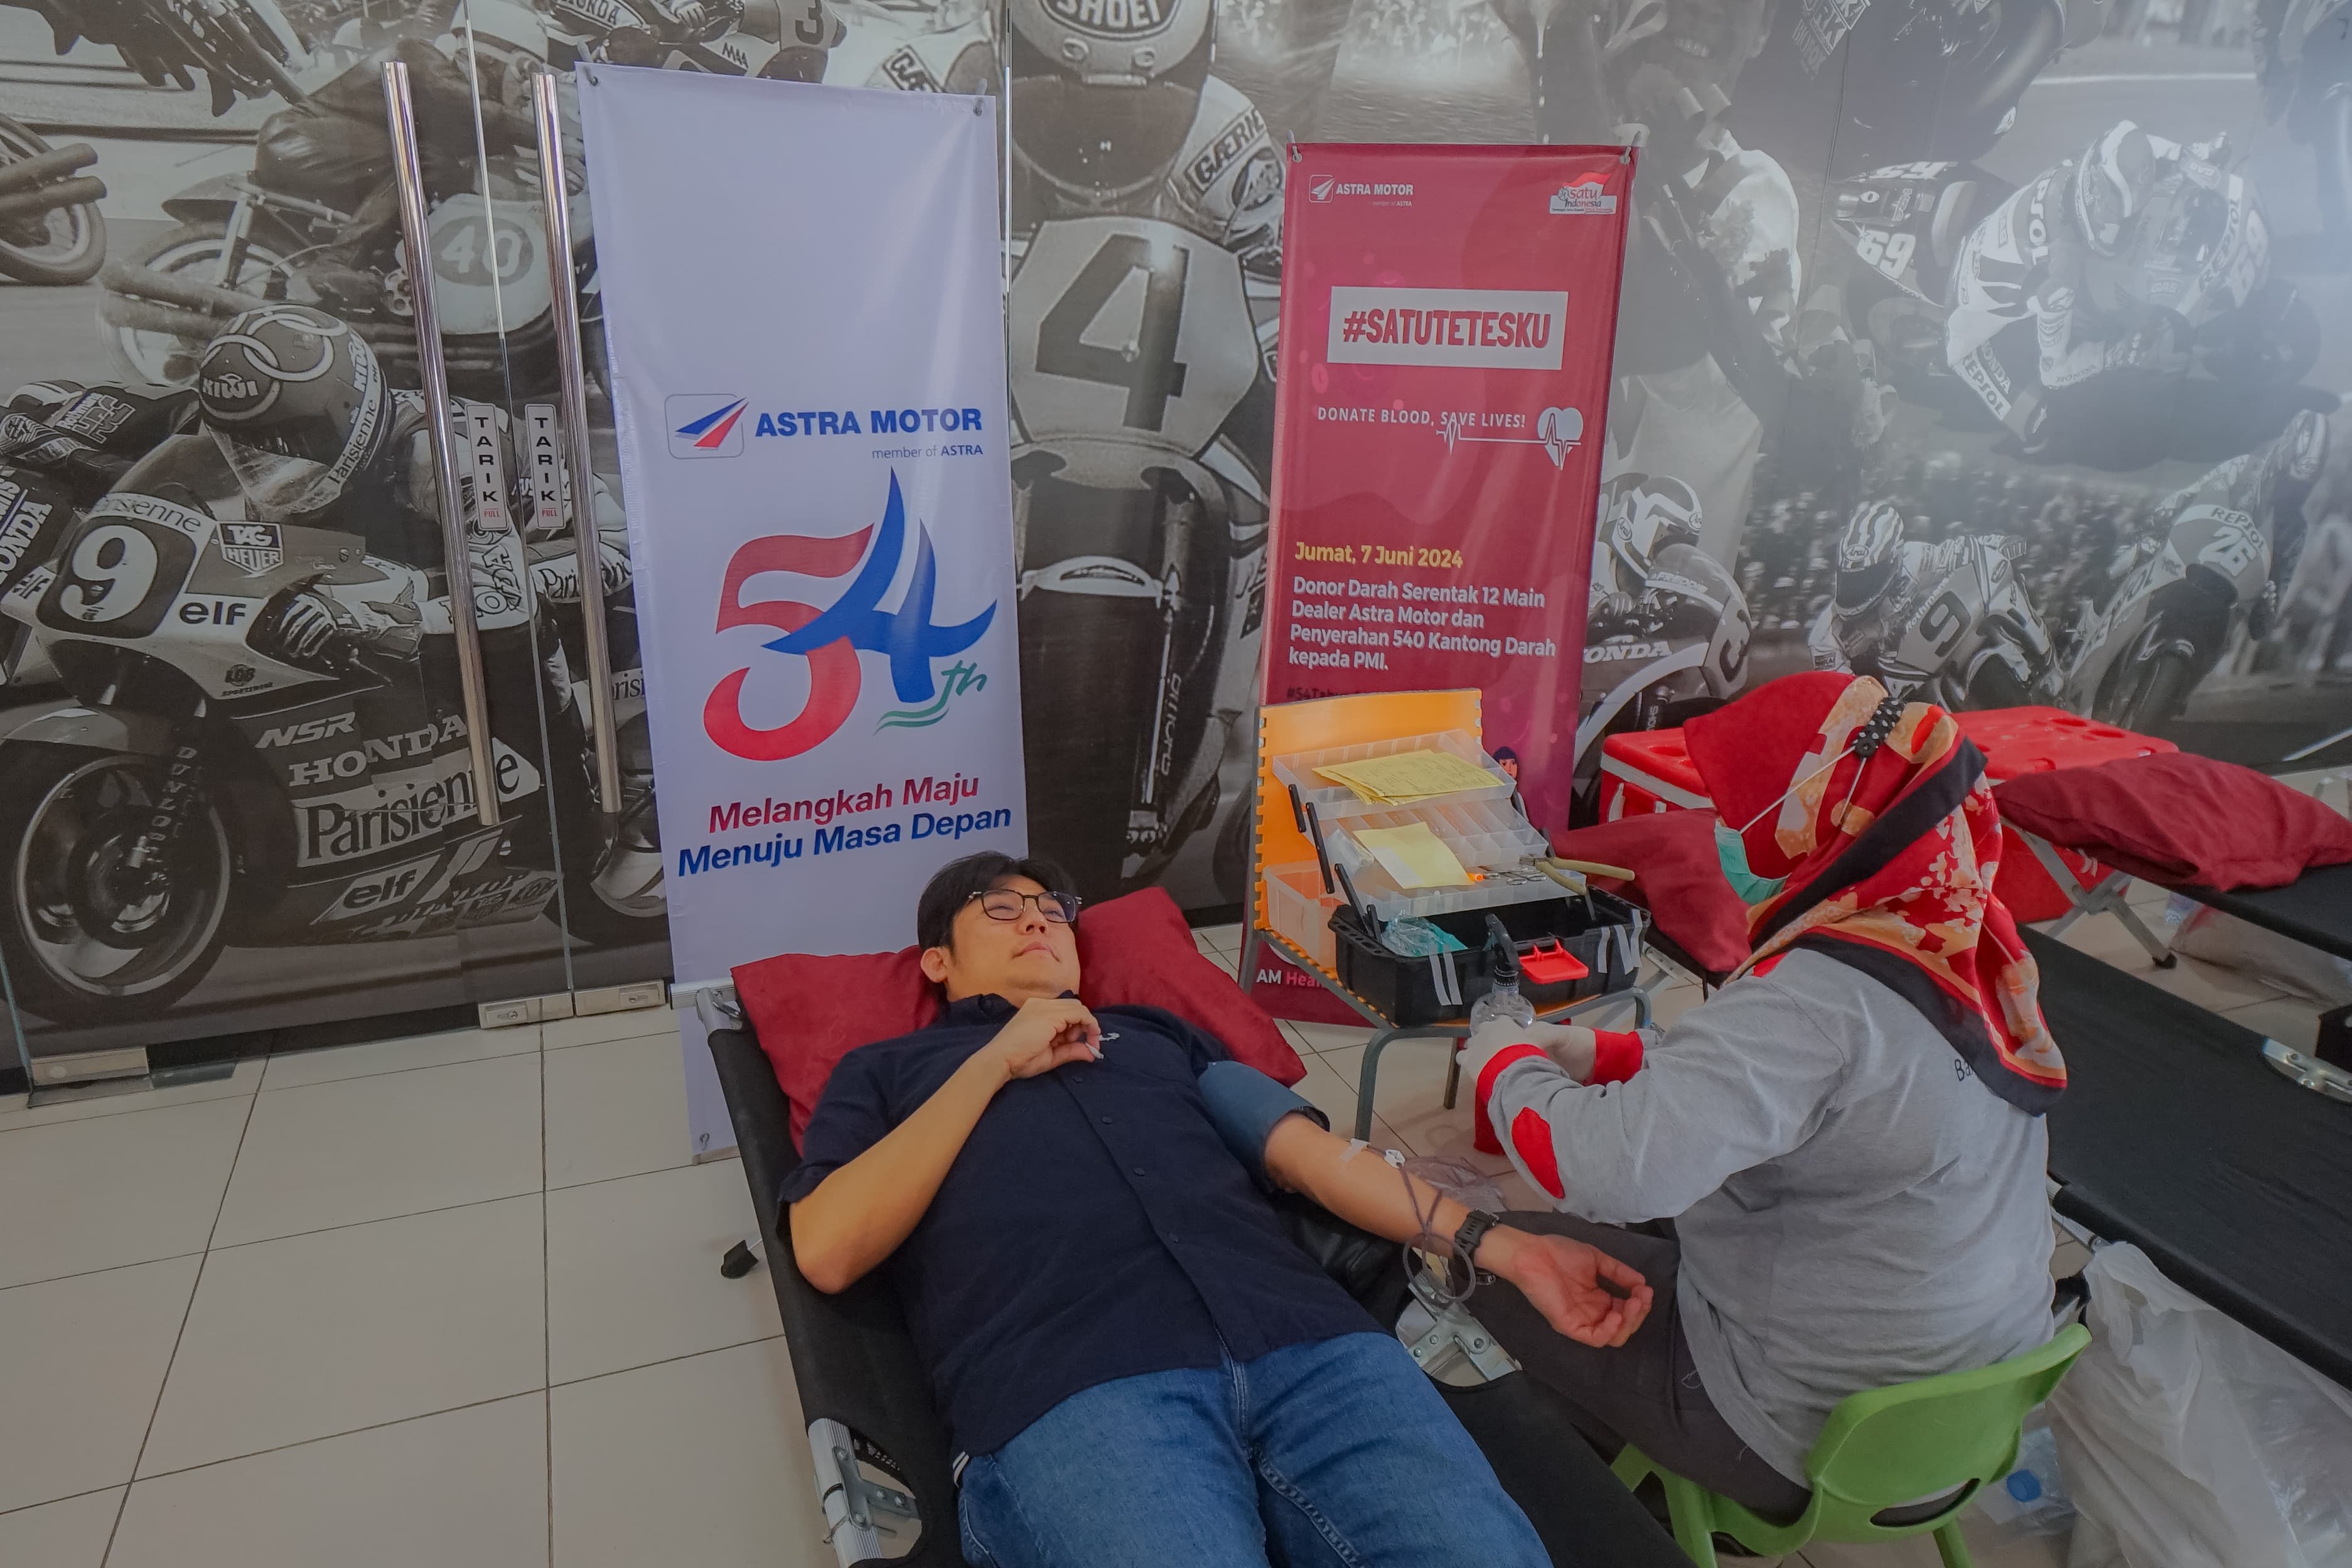 Buka Rangkaian HUT ke-54, Astra Motor Gerakkan Aksi Donor Darah Serempak #SatuTetesku